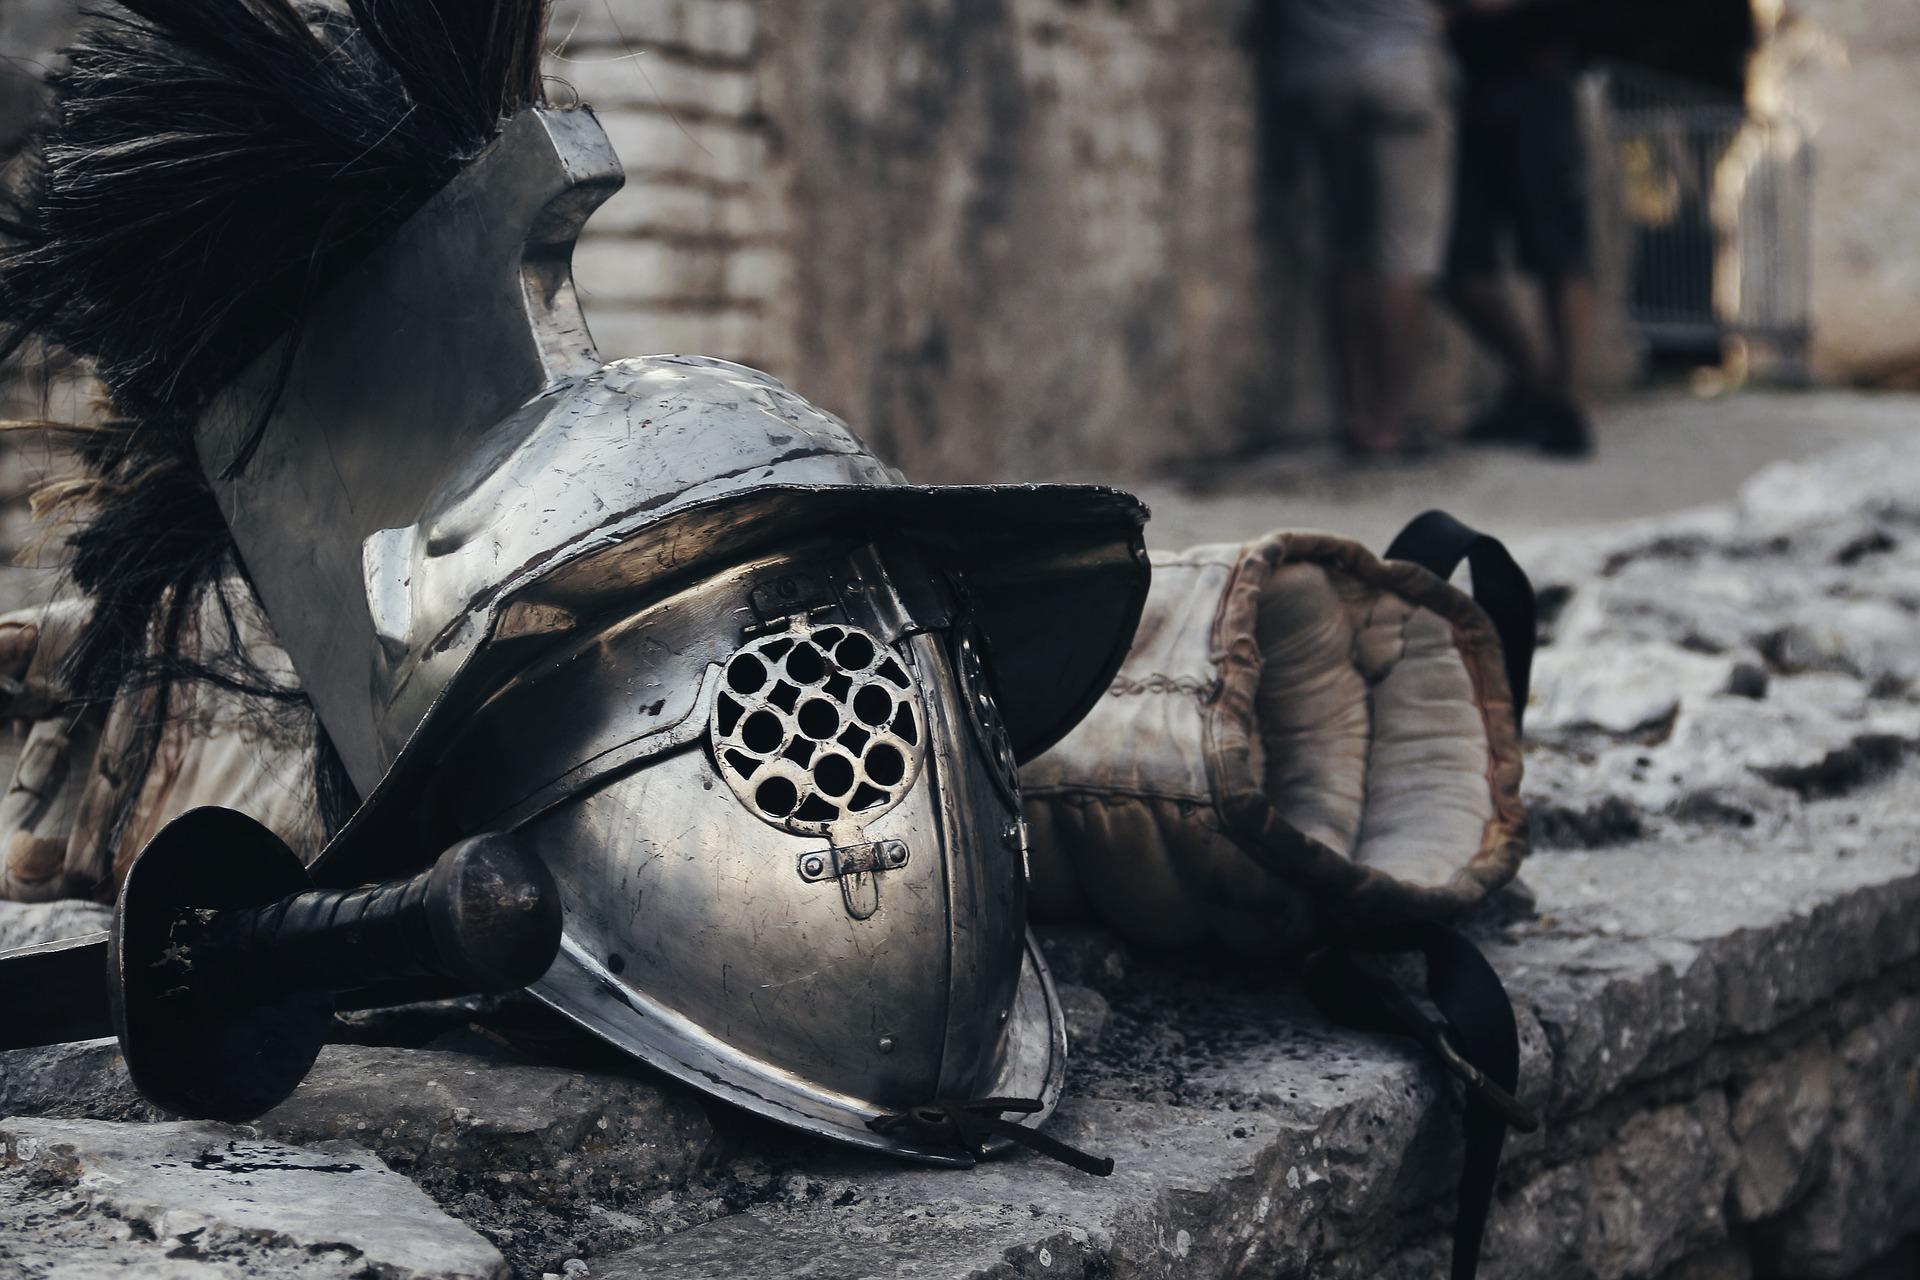 Gladiatorenhelm und Ausrüstung auf Mauer (Bild von ArsAdAstra auf Pixabay)